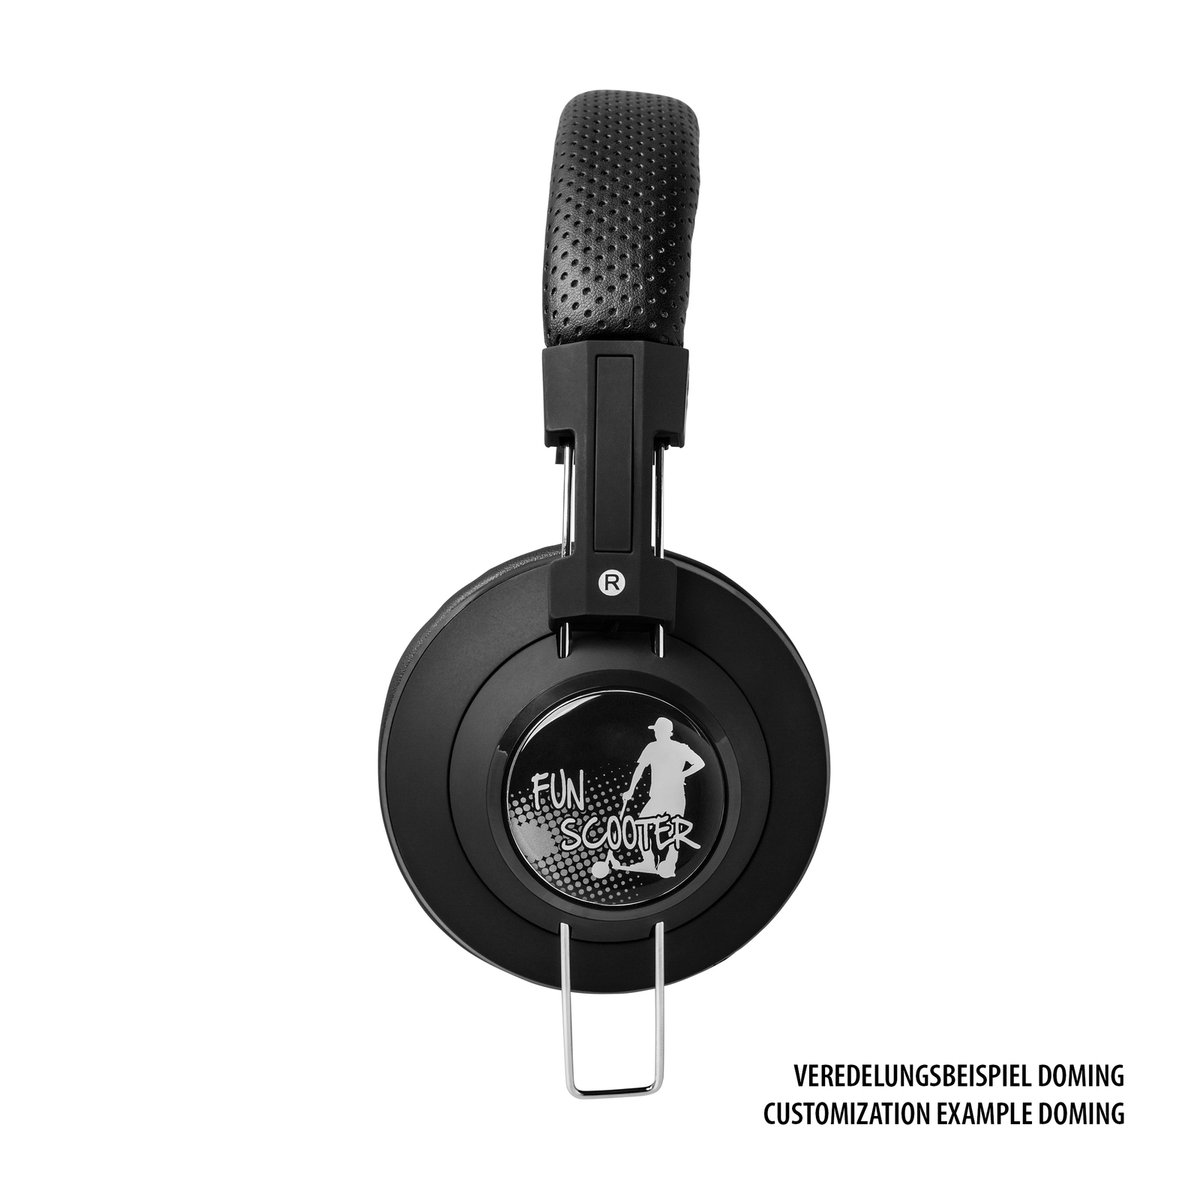 Headphones REEVES-BRAMPTON black/black